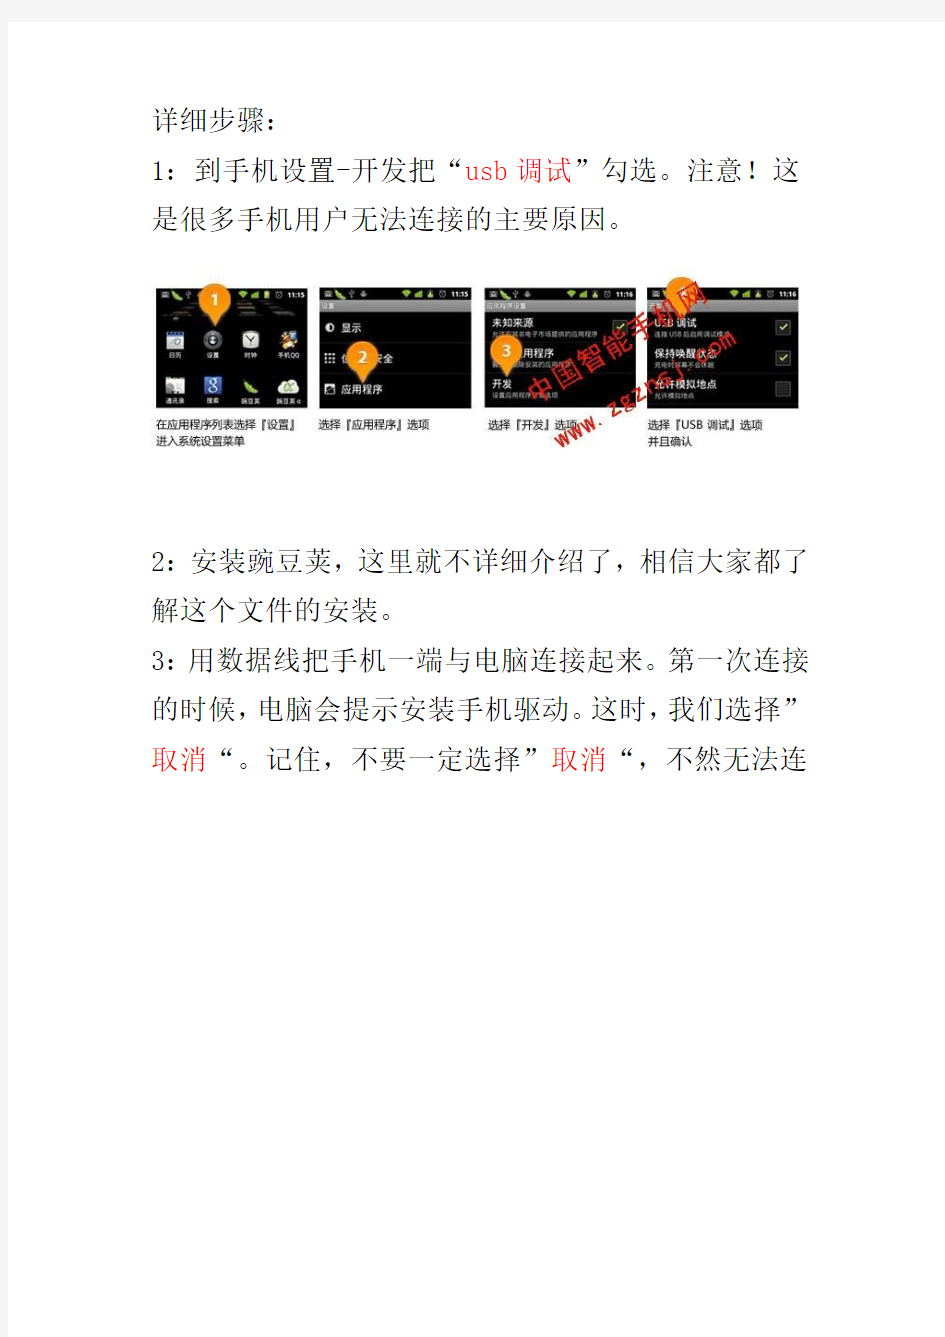 中国智能手机网教你使用豌豆荚